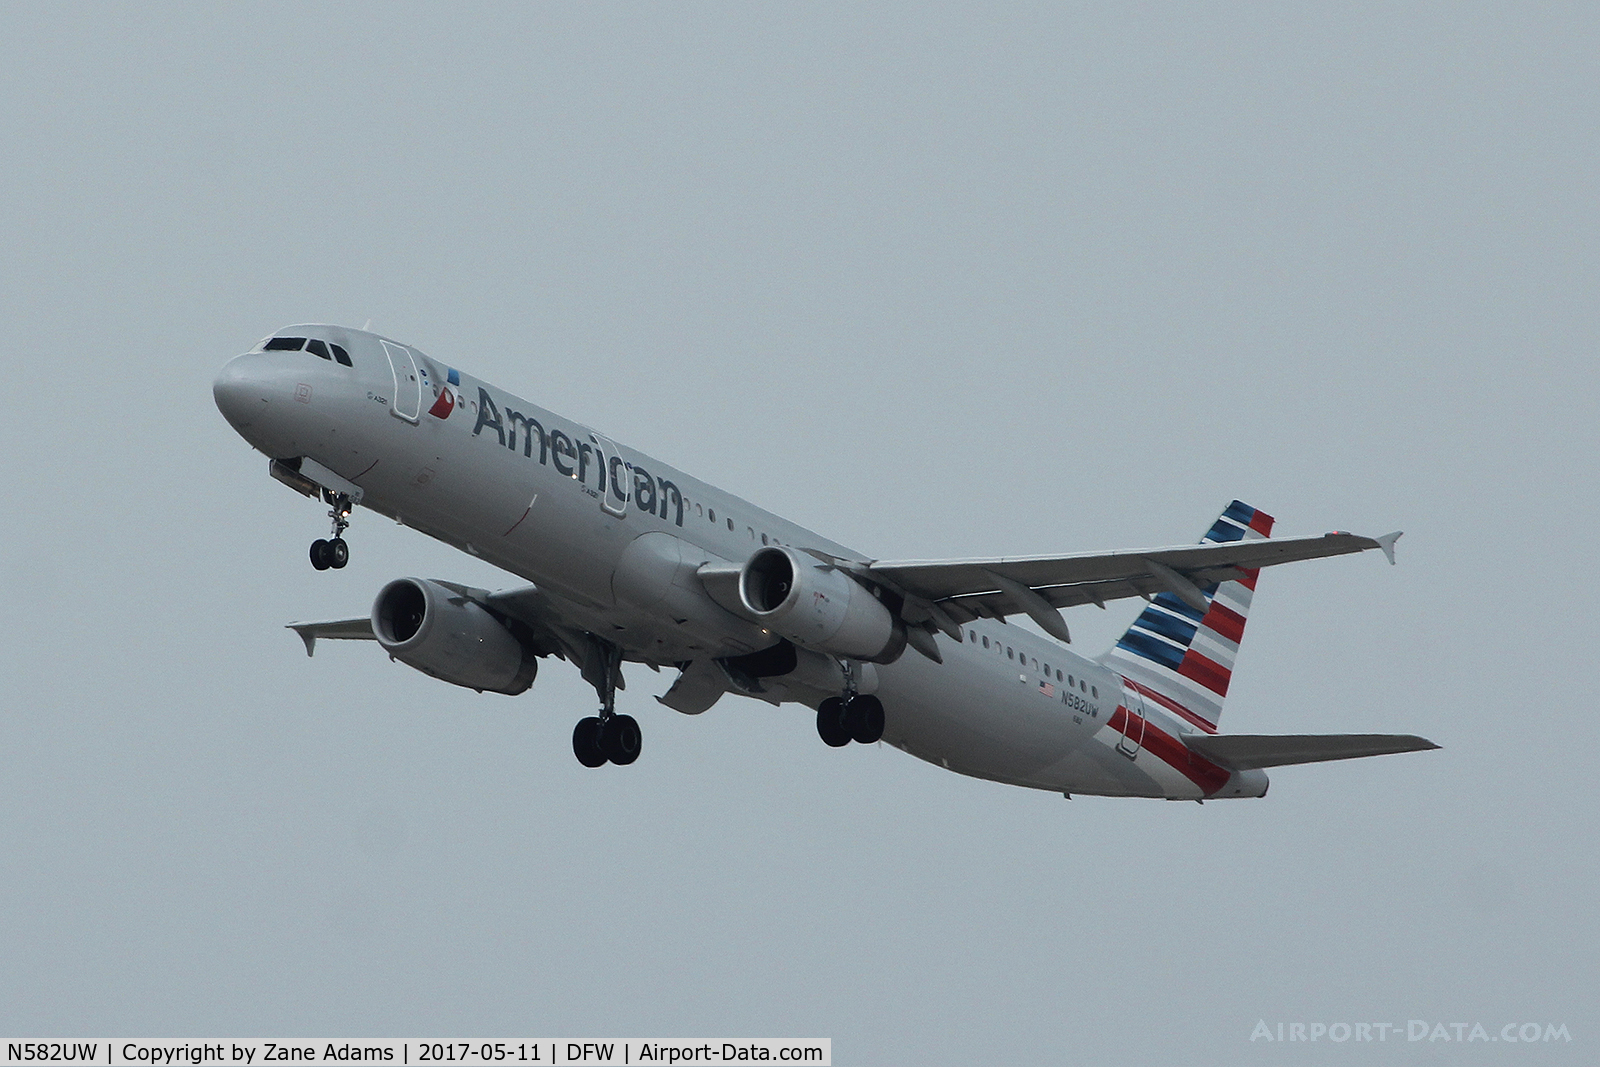 N582UW, 2014 Airbus A321-231 C/N 6175, Departing DFW Airport